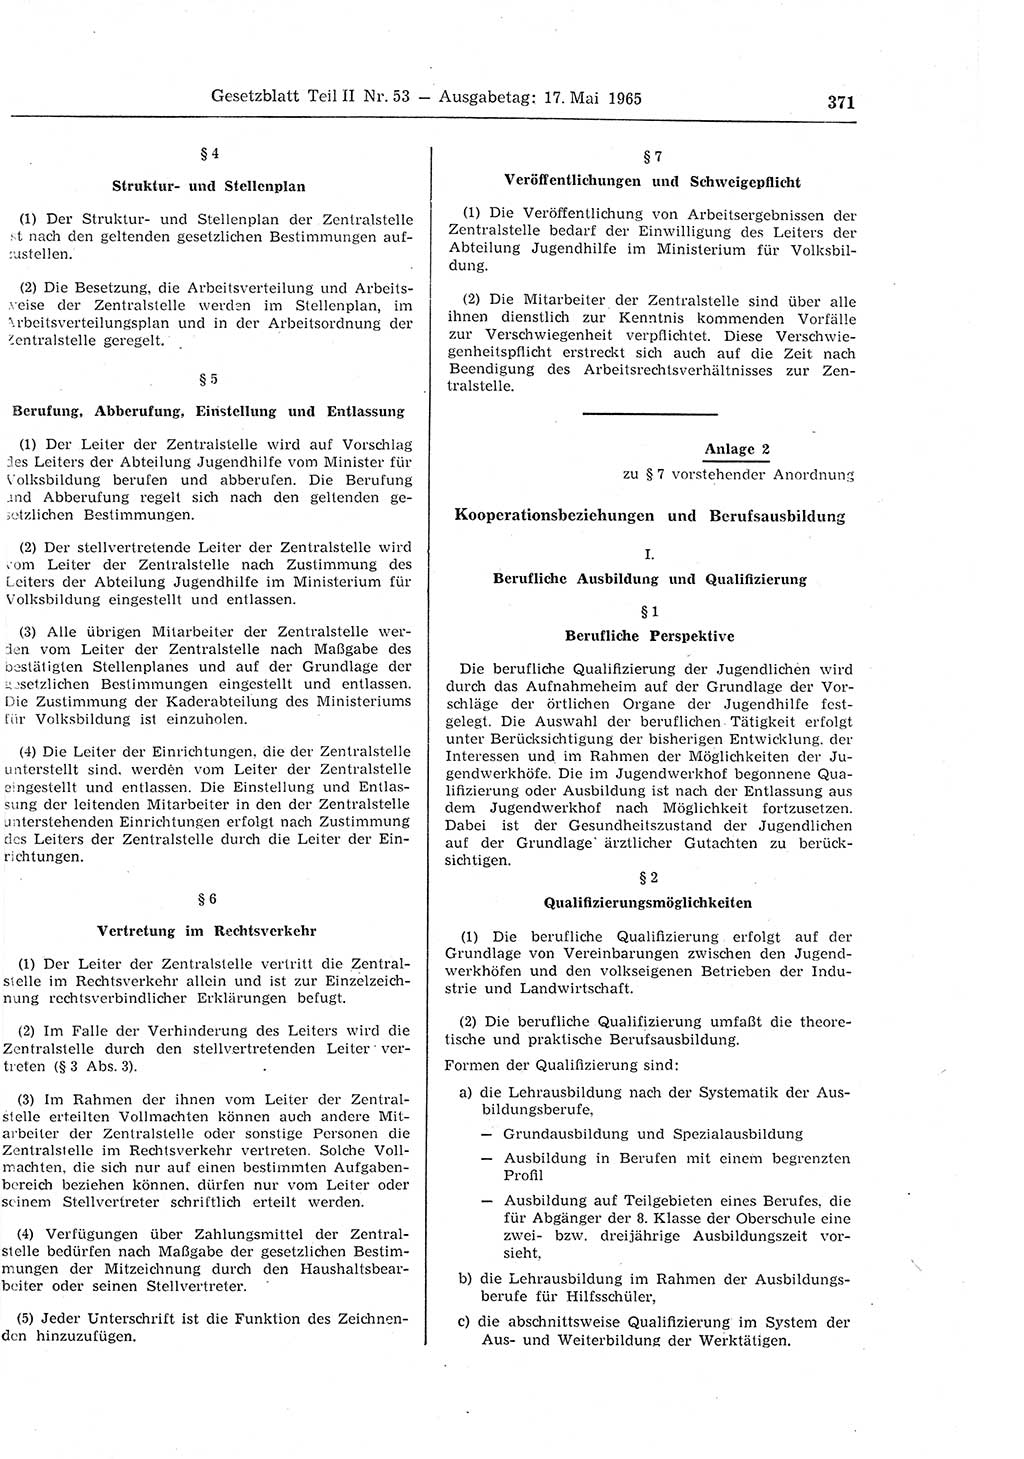 Gesetzblatt (GBl.) der Deutschen Demokratischen Republik (DDR) Teil ⅠⅠ 1965, Seite 371 (GBl. DDR ⅠⅠ 1965, S. 371)